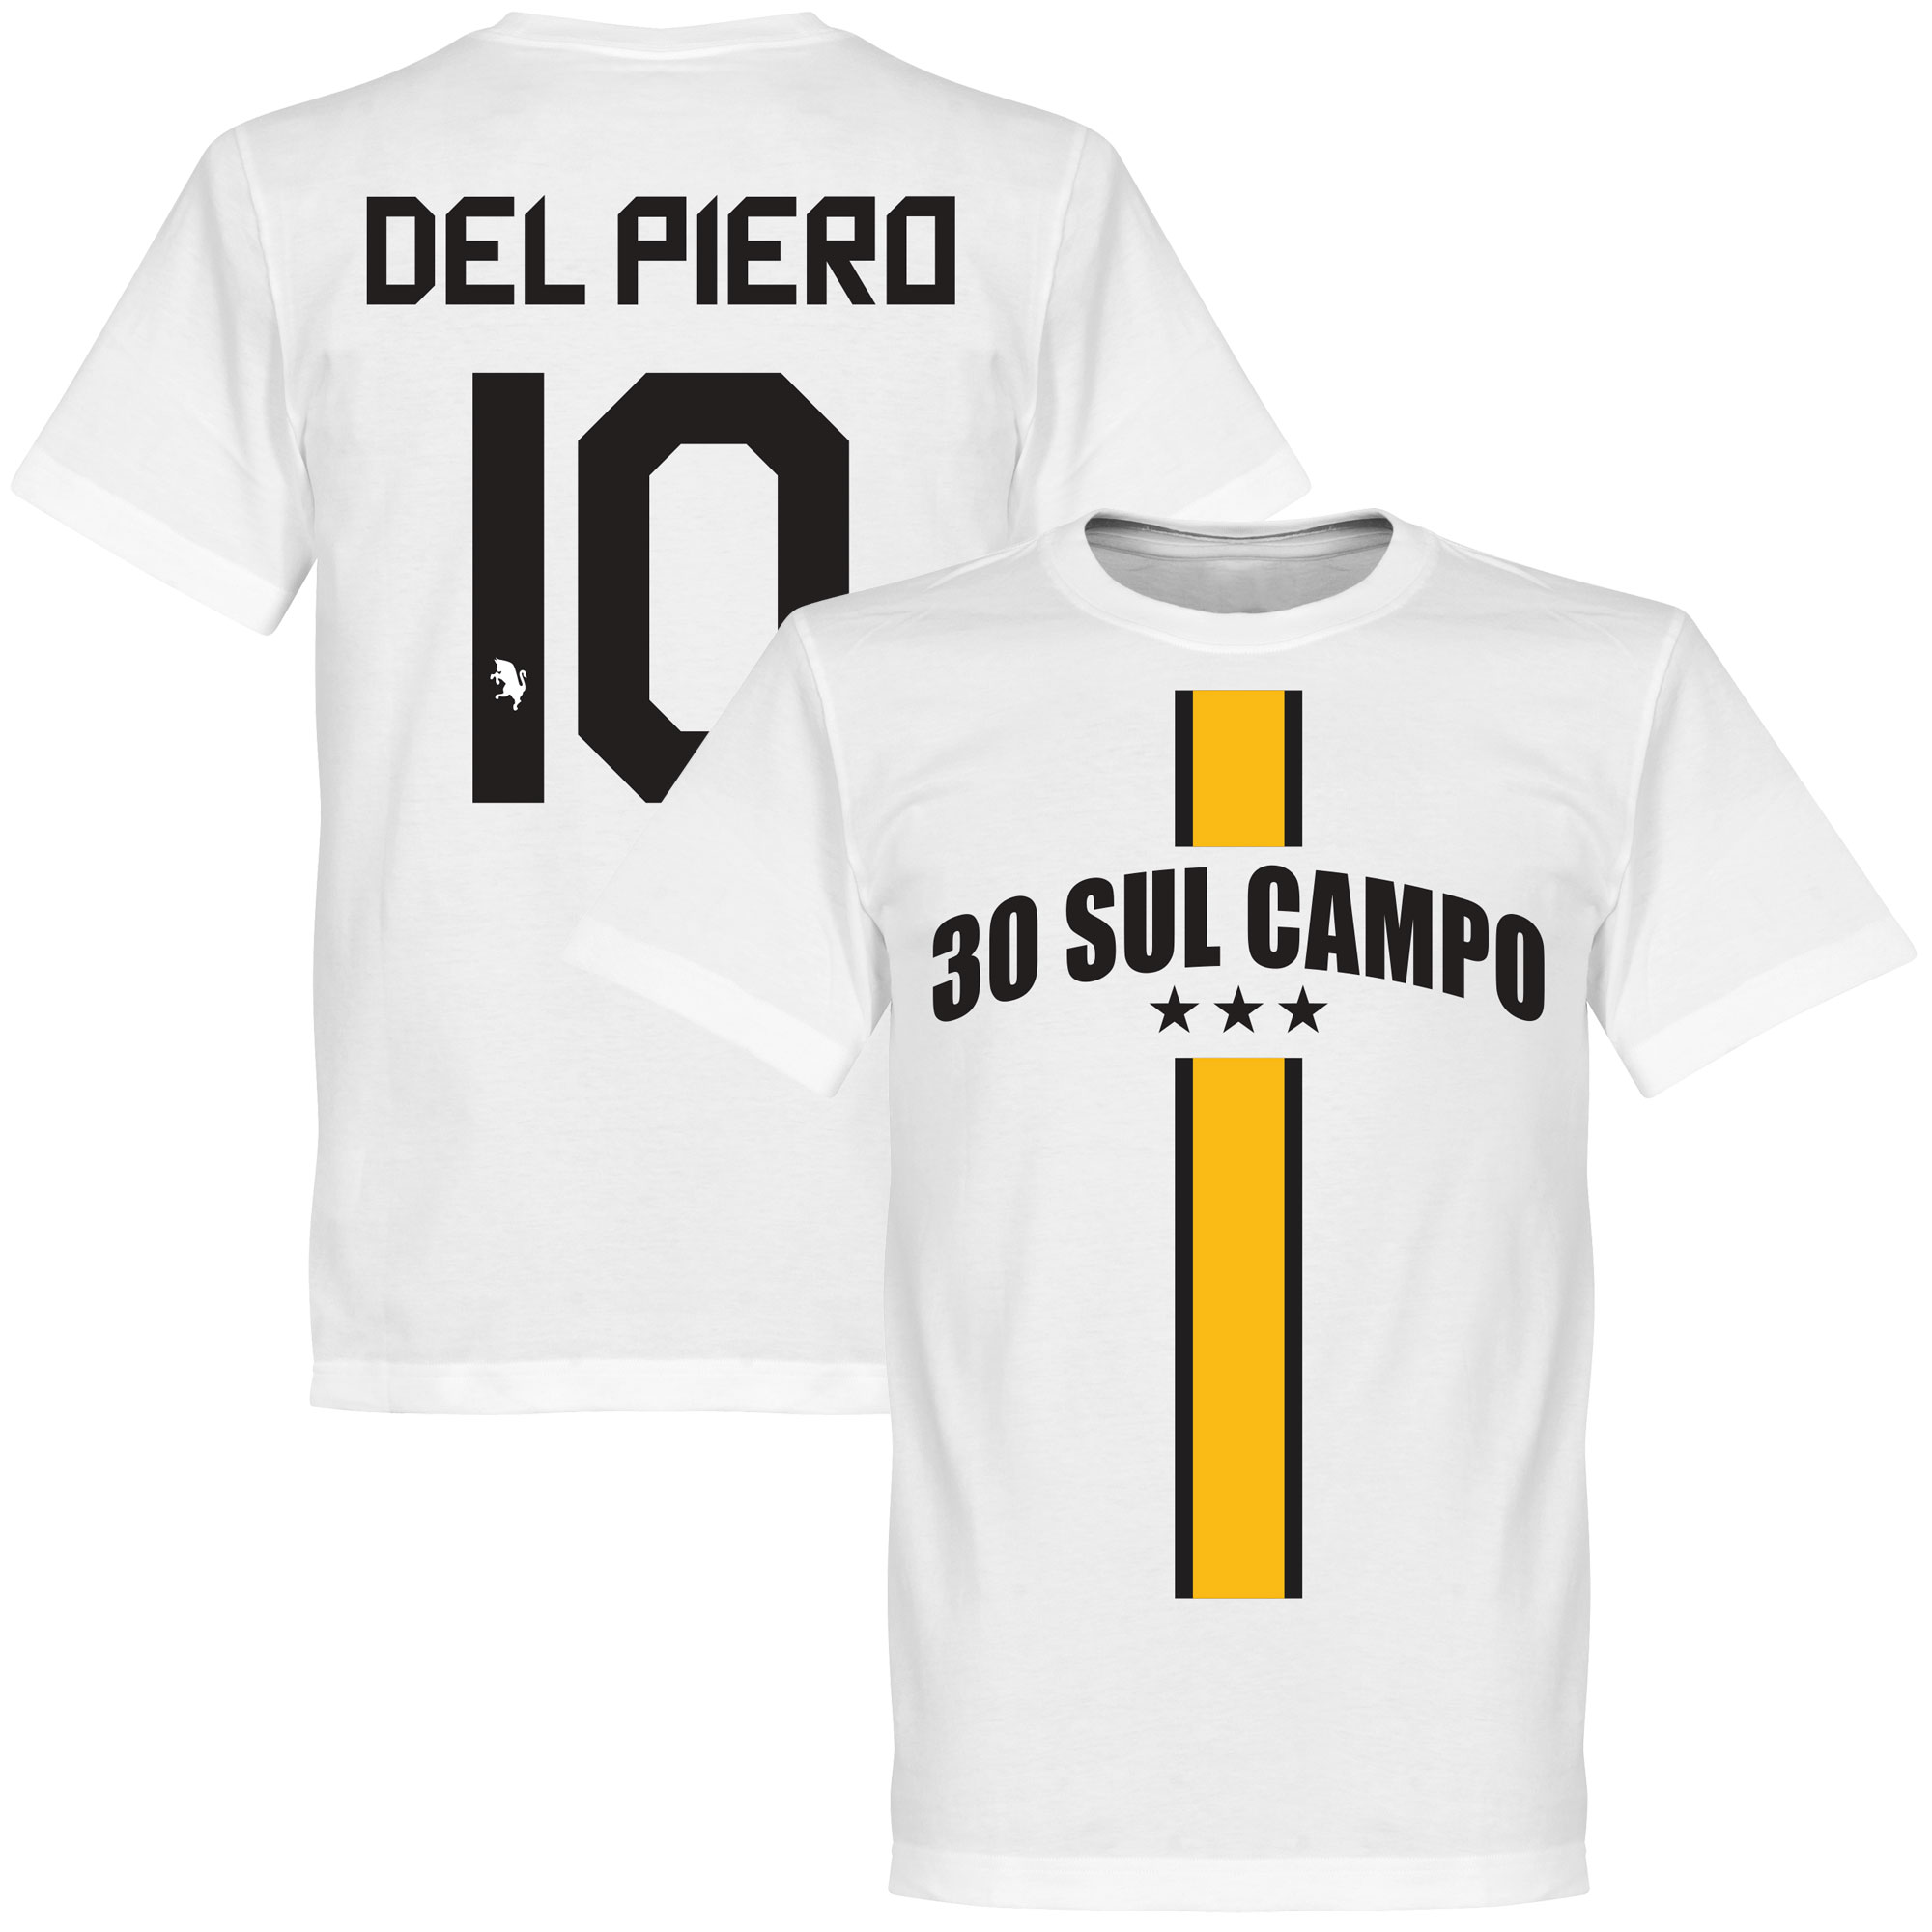 30 Sul Campo Del Piero T-shirt XS